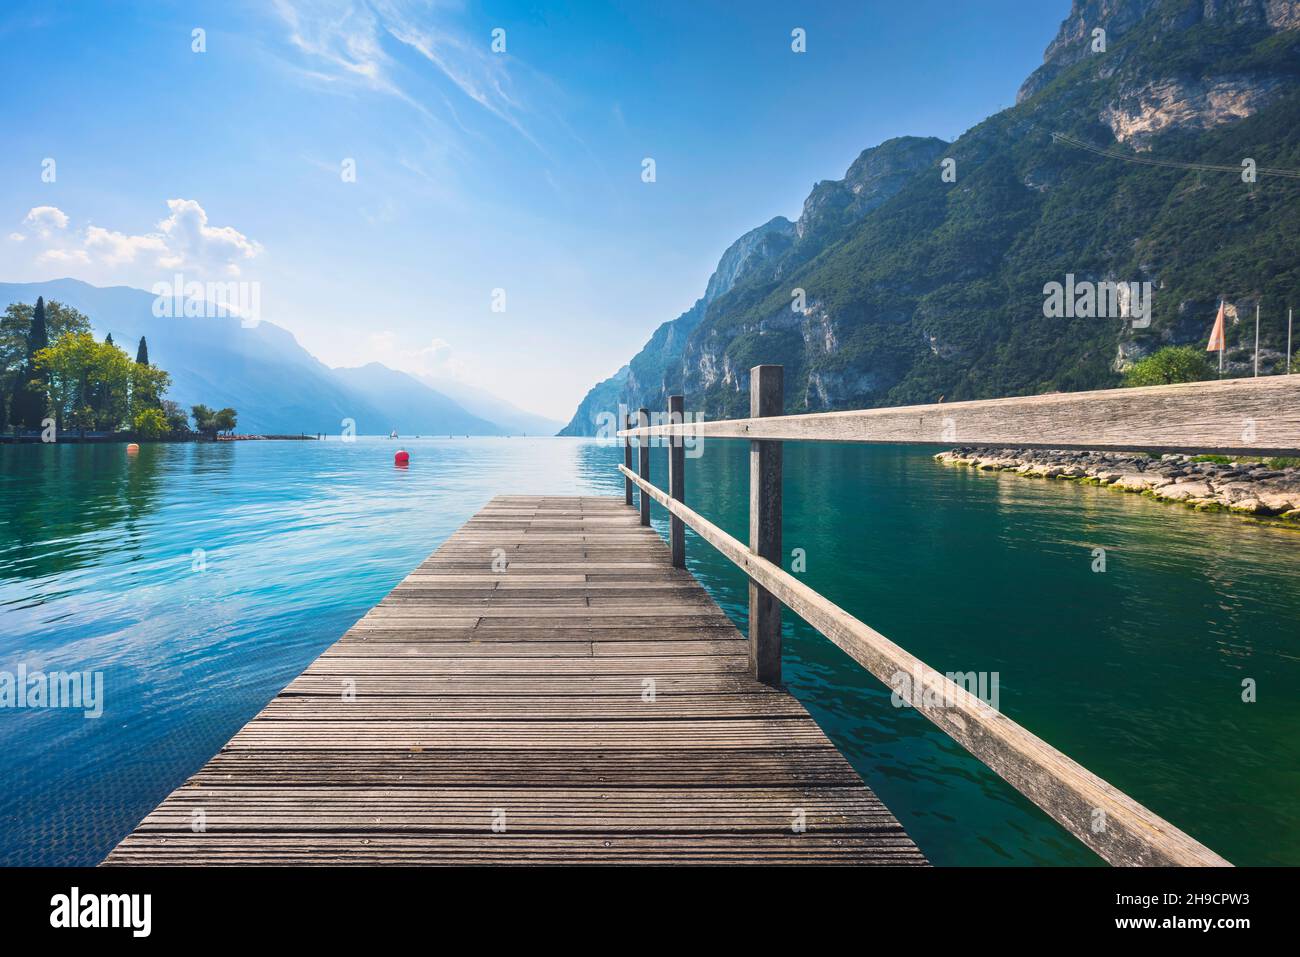 Molo di legno sul lago. Riva del Garda, Trentino, Italia, Europa. Foto Stock